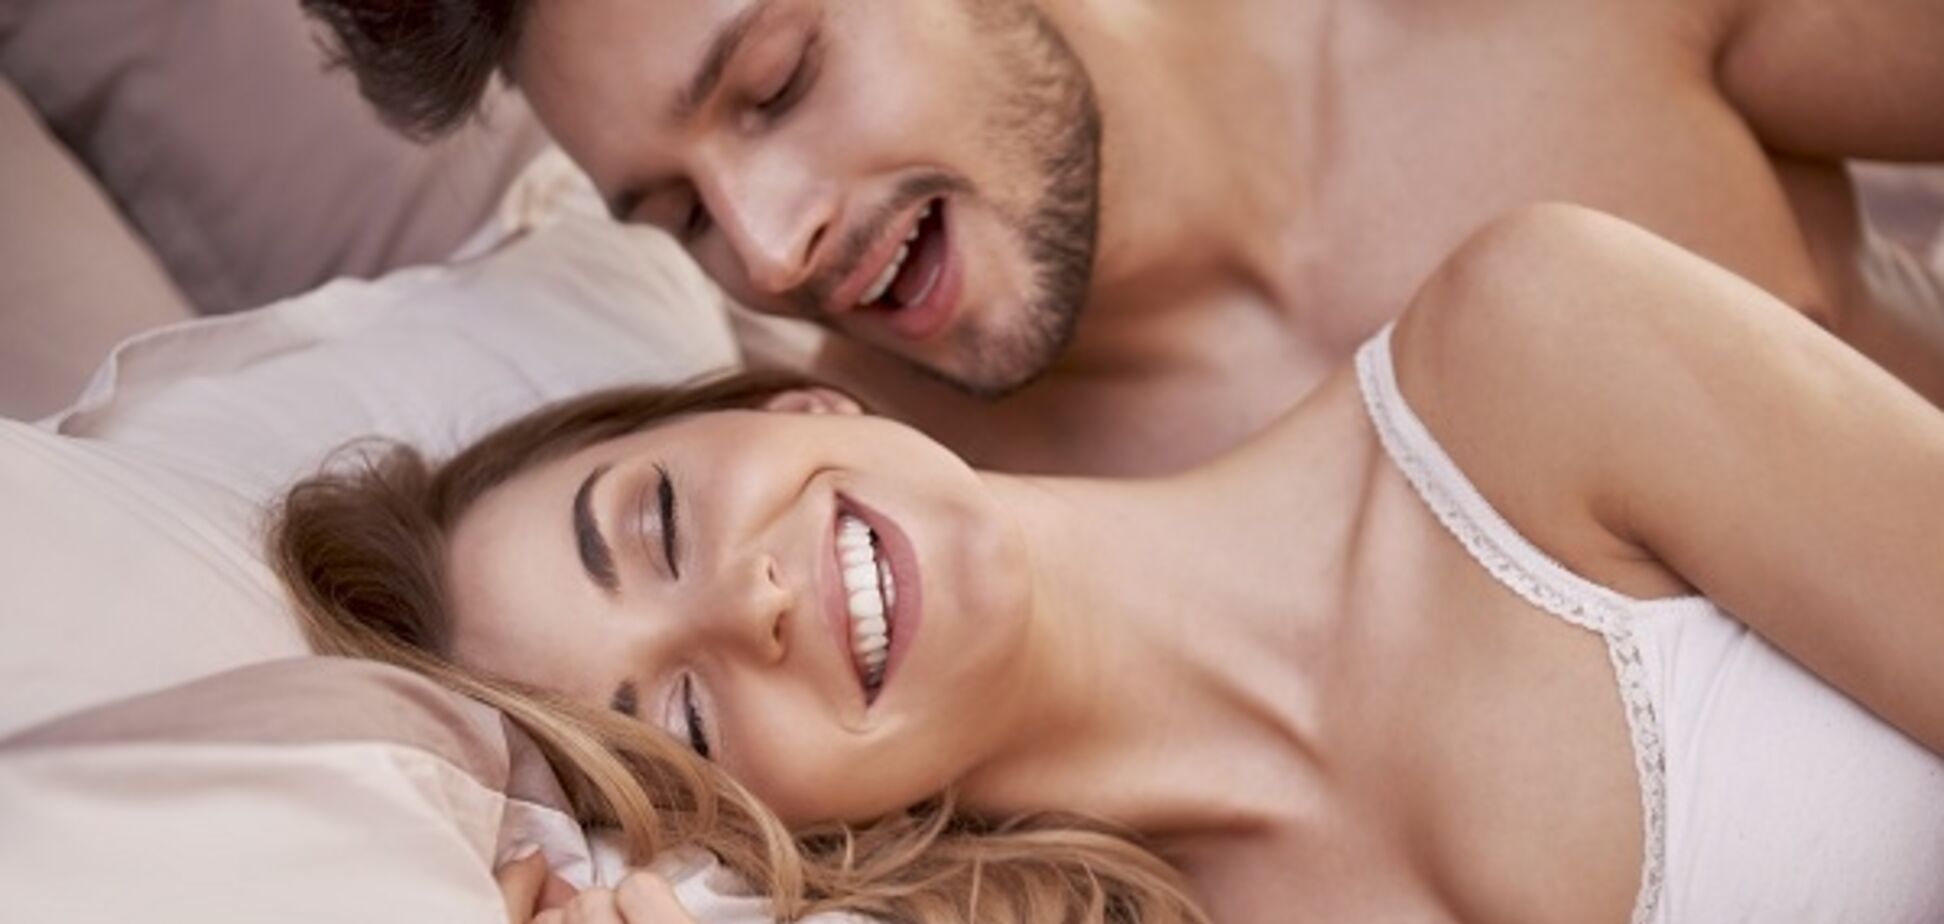 Чого хочуть жінки в ліжку: розкрито основні секс-фантазії